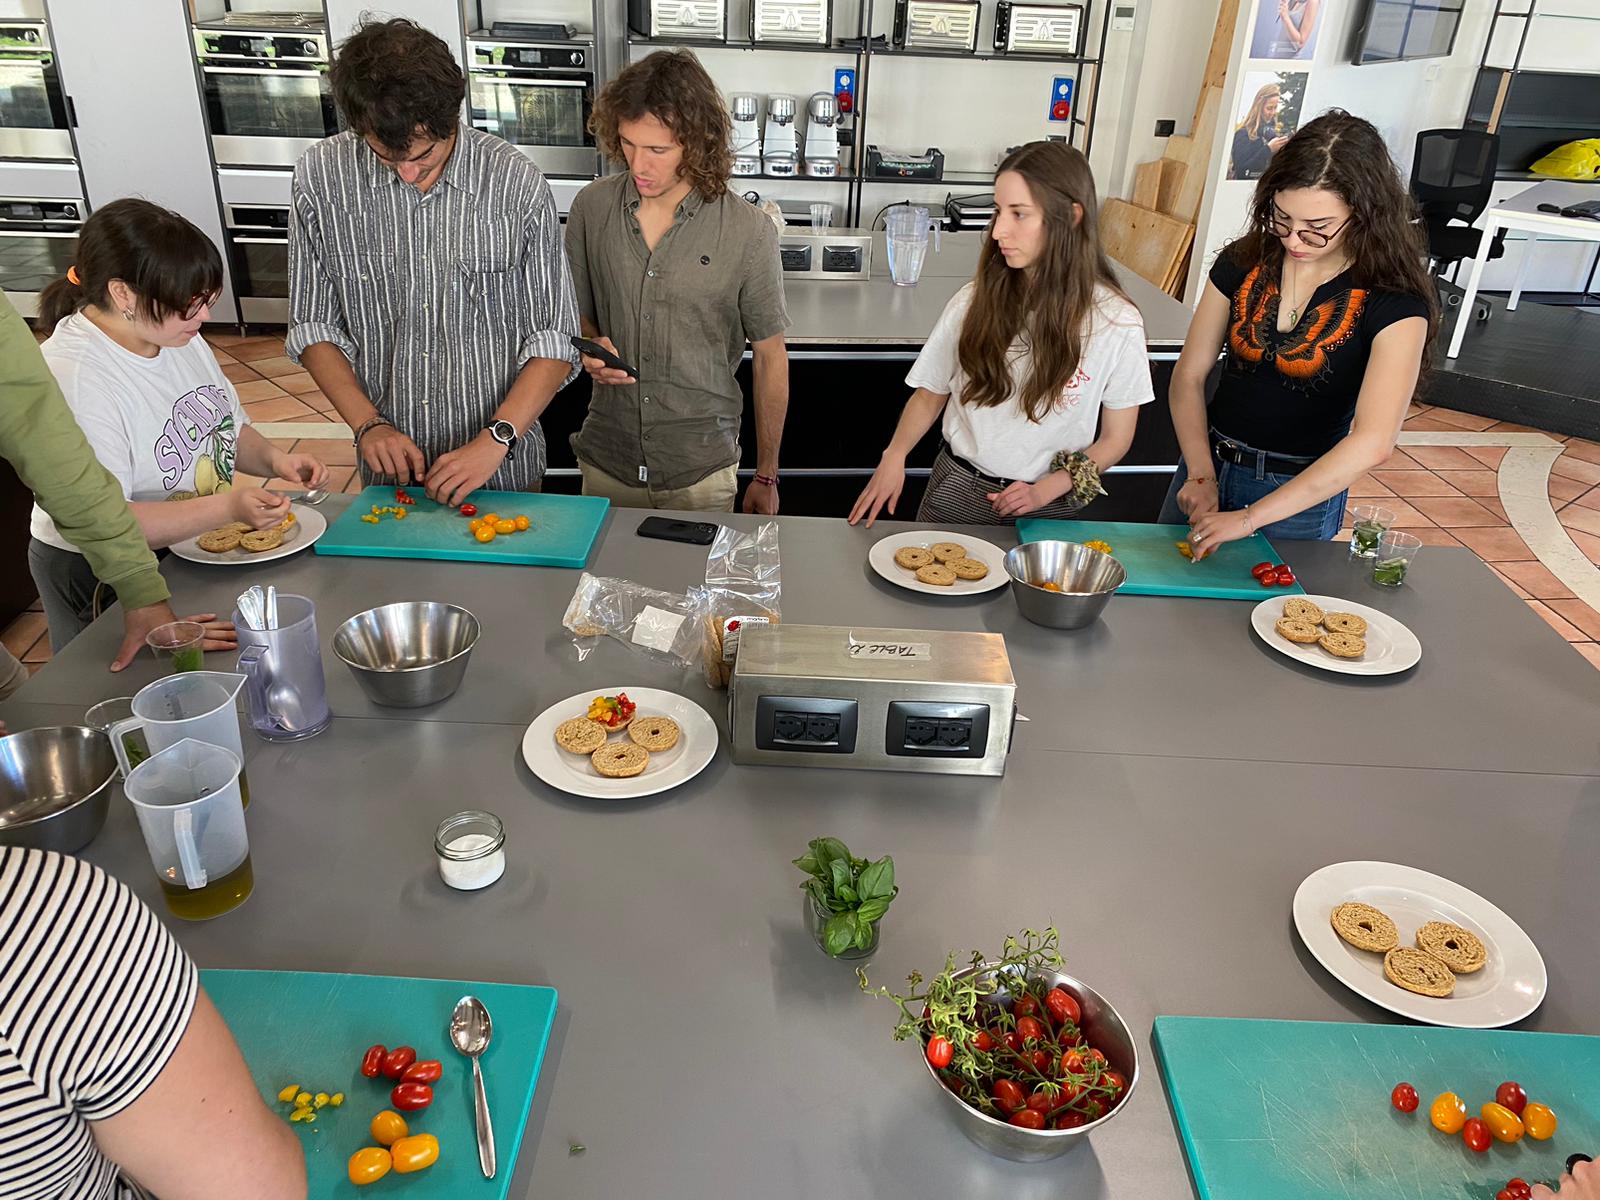 Ristolab all’Università di Scienze Gastronomiche di Pollenzo per condividere il modello della Dieta mediterranea